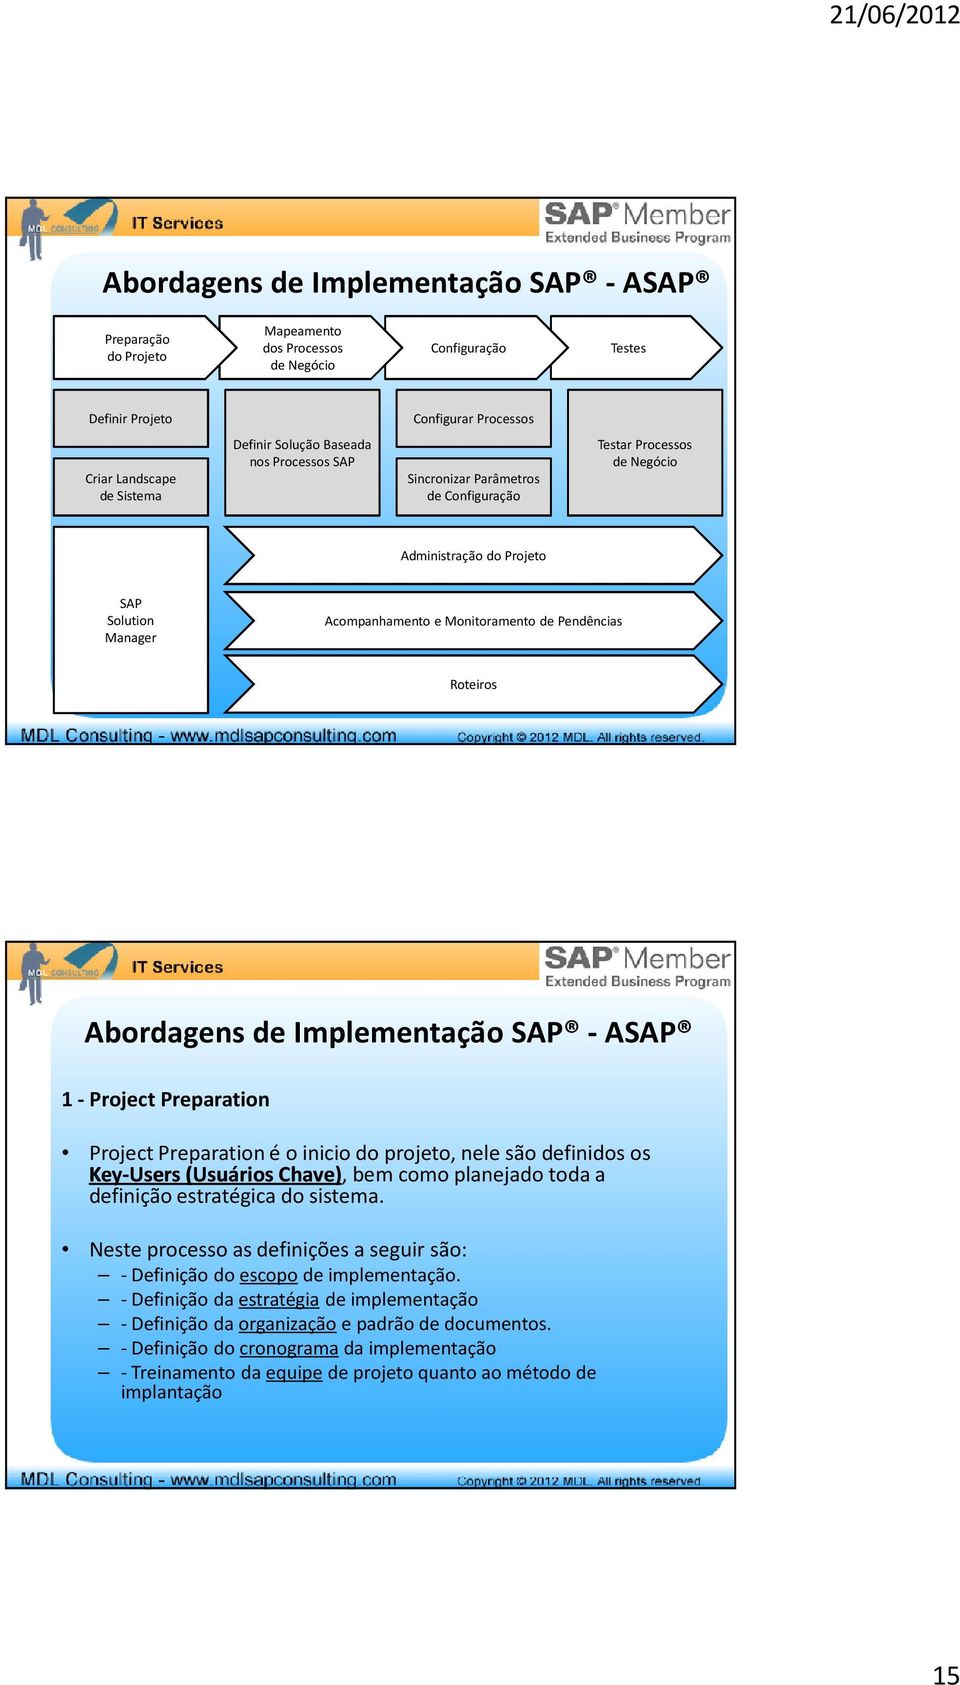 Abordagens de Implementação SAP - ASAP 1 - Project Preparation Project Preparationé o inicio do projeto, nele são definidos os Key-Users(Usuários Chave), bem como planejado toda a definição